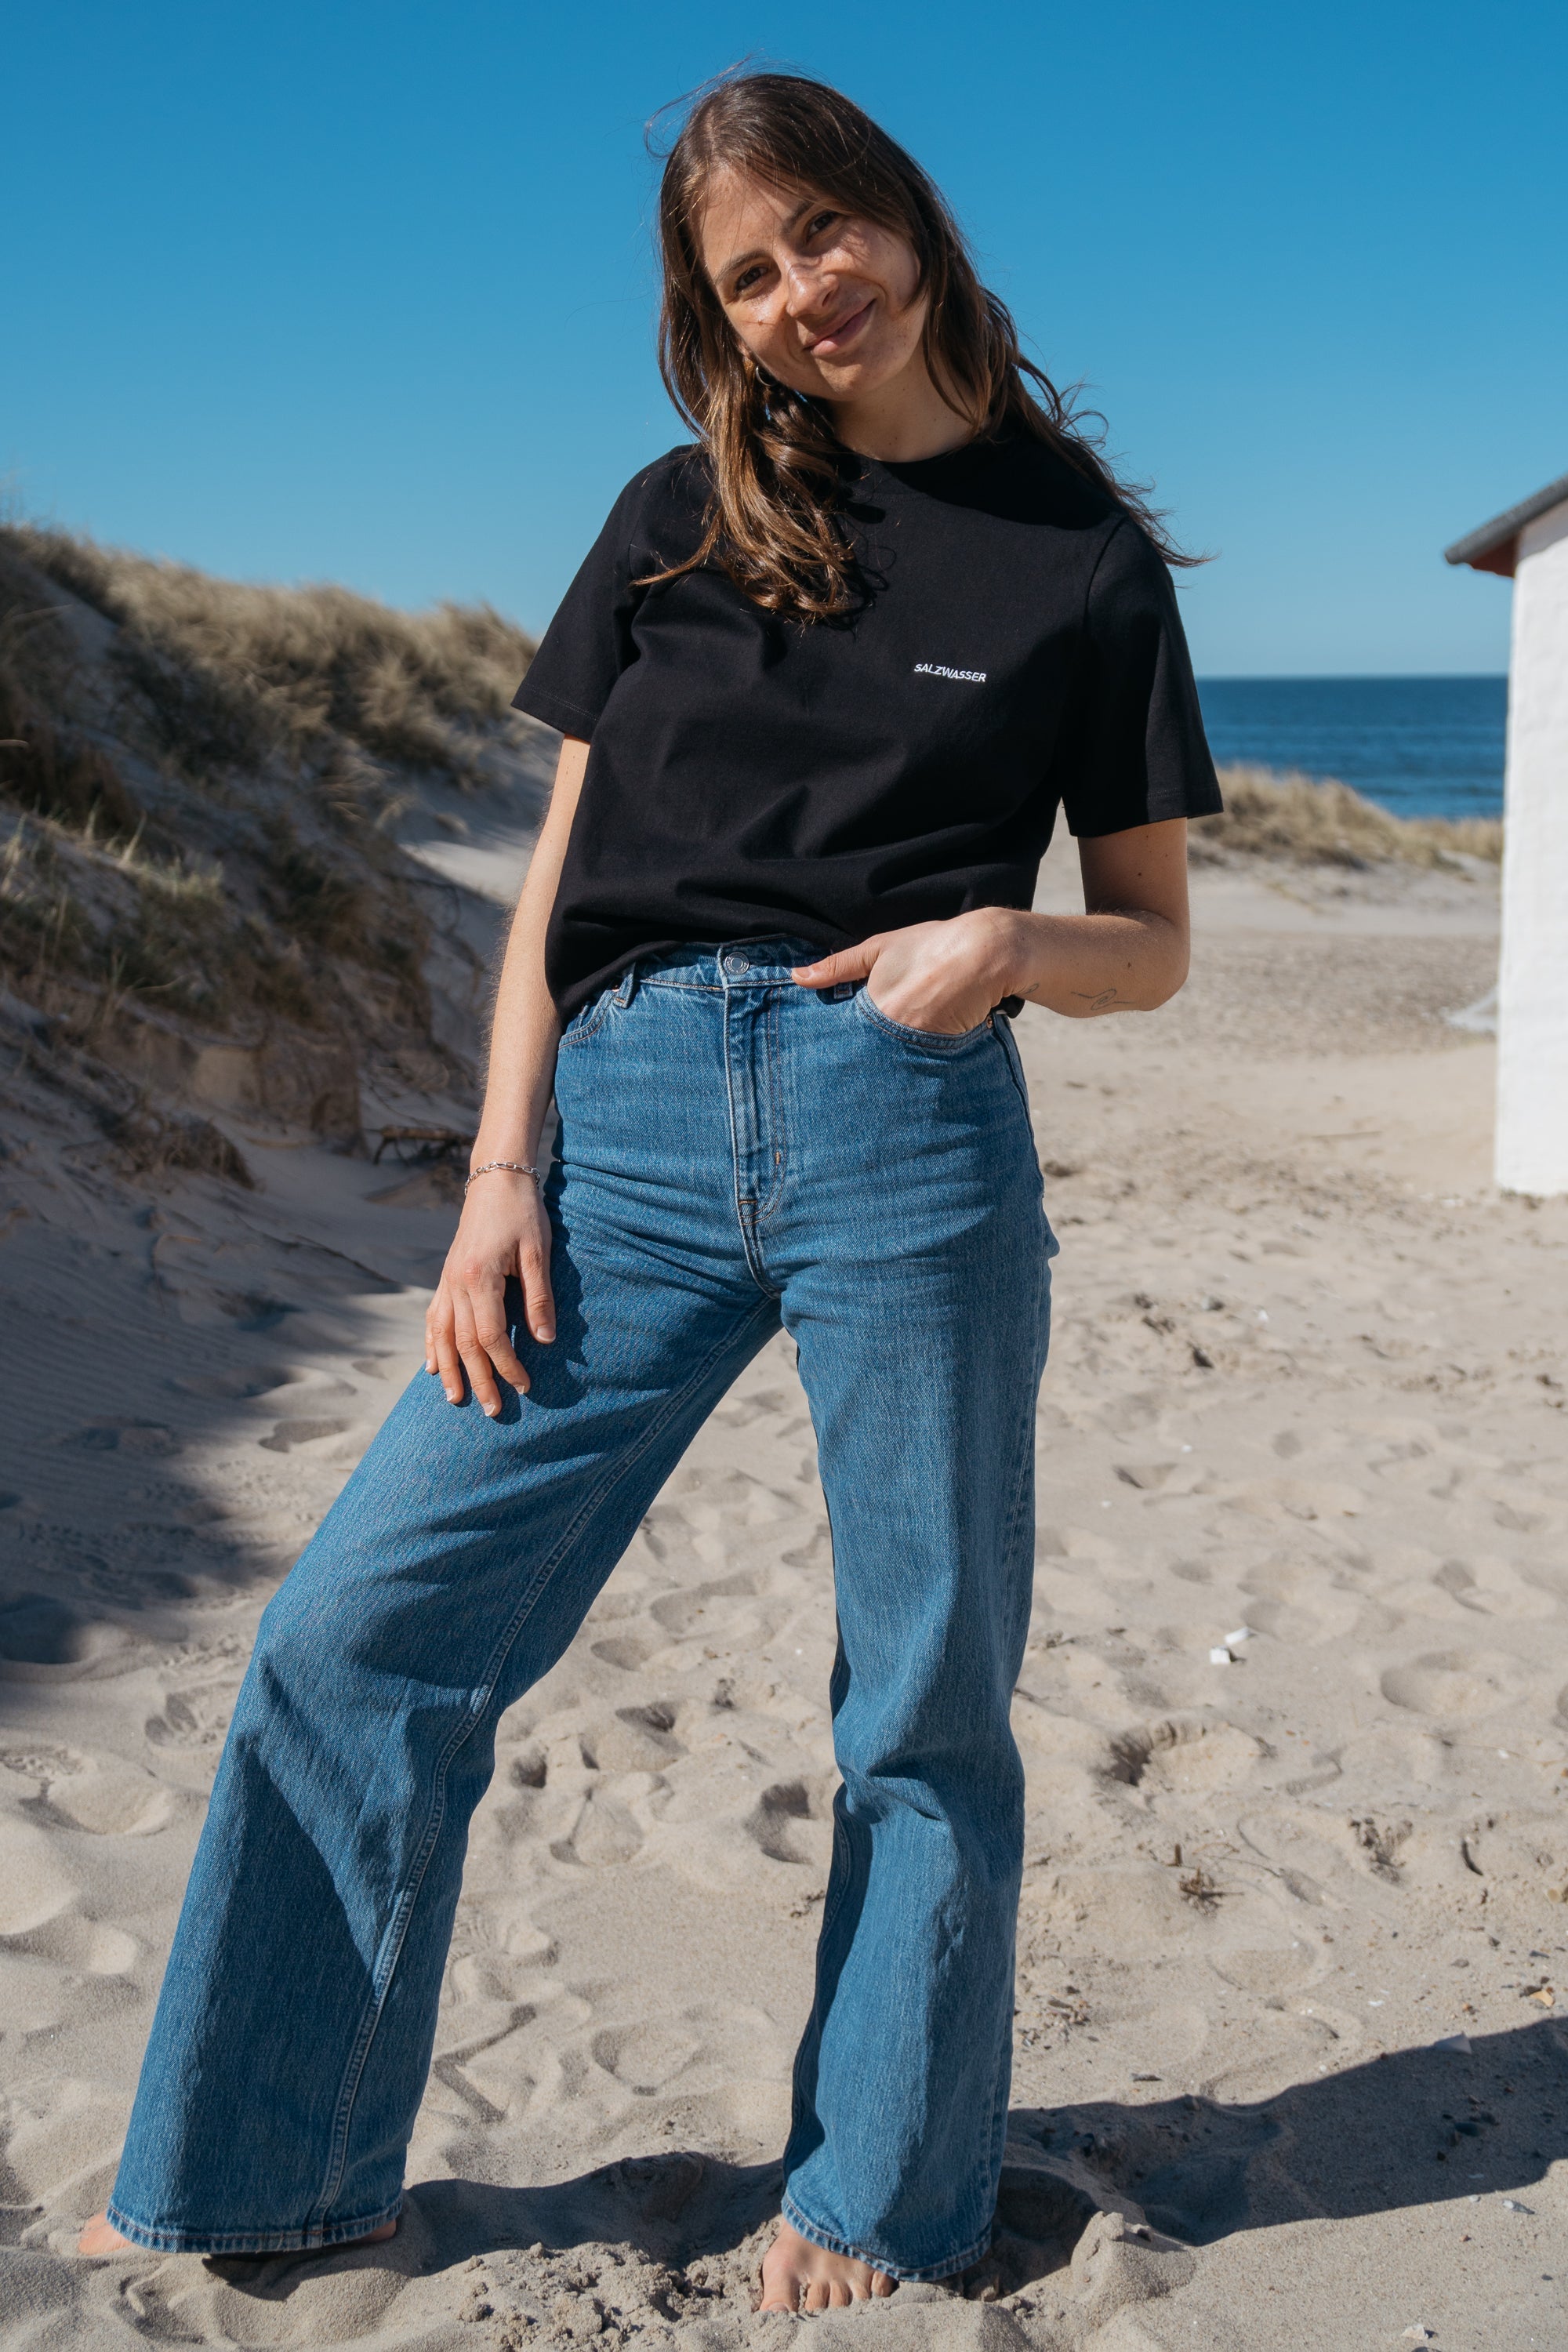 Heavy T-Shirt Jonna Schwarz aus Bio Baumwolle von Salzwasser